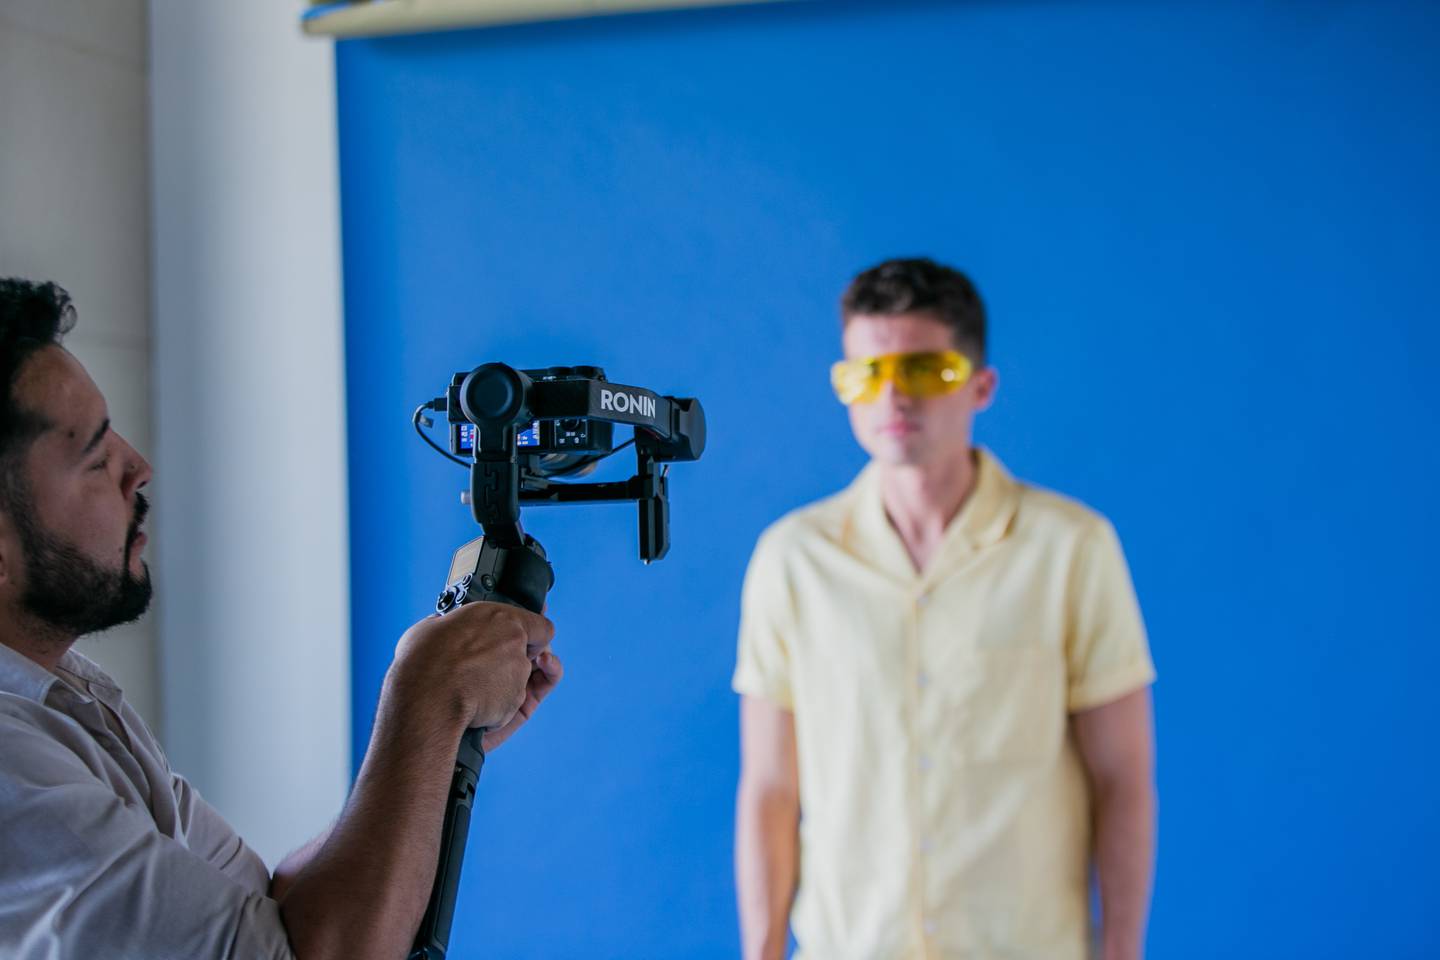 Concurso de cortometrajes estudiantiles más grande del país  “Aquí cambiamos el mundo”